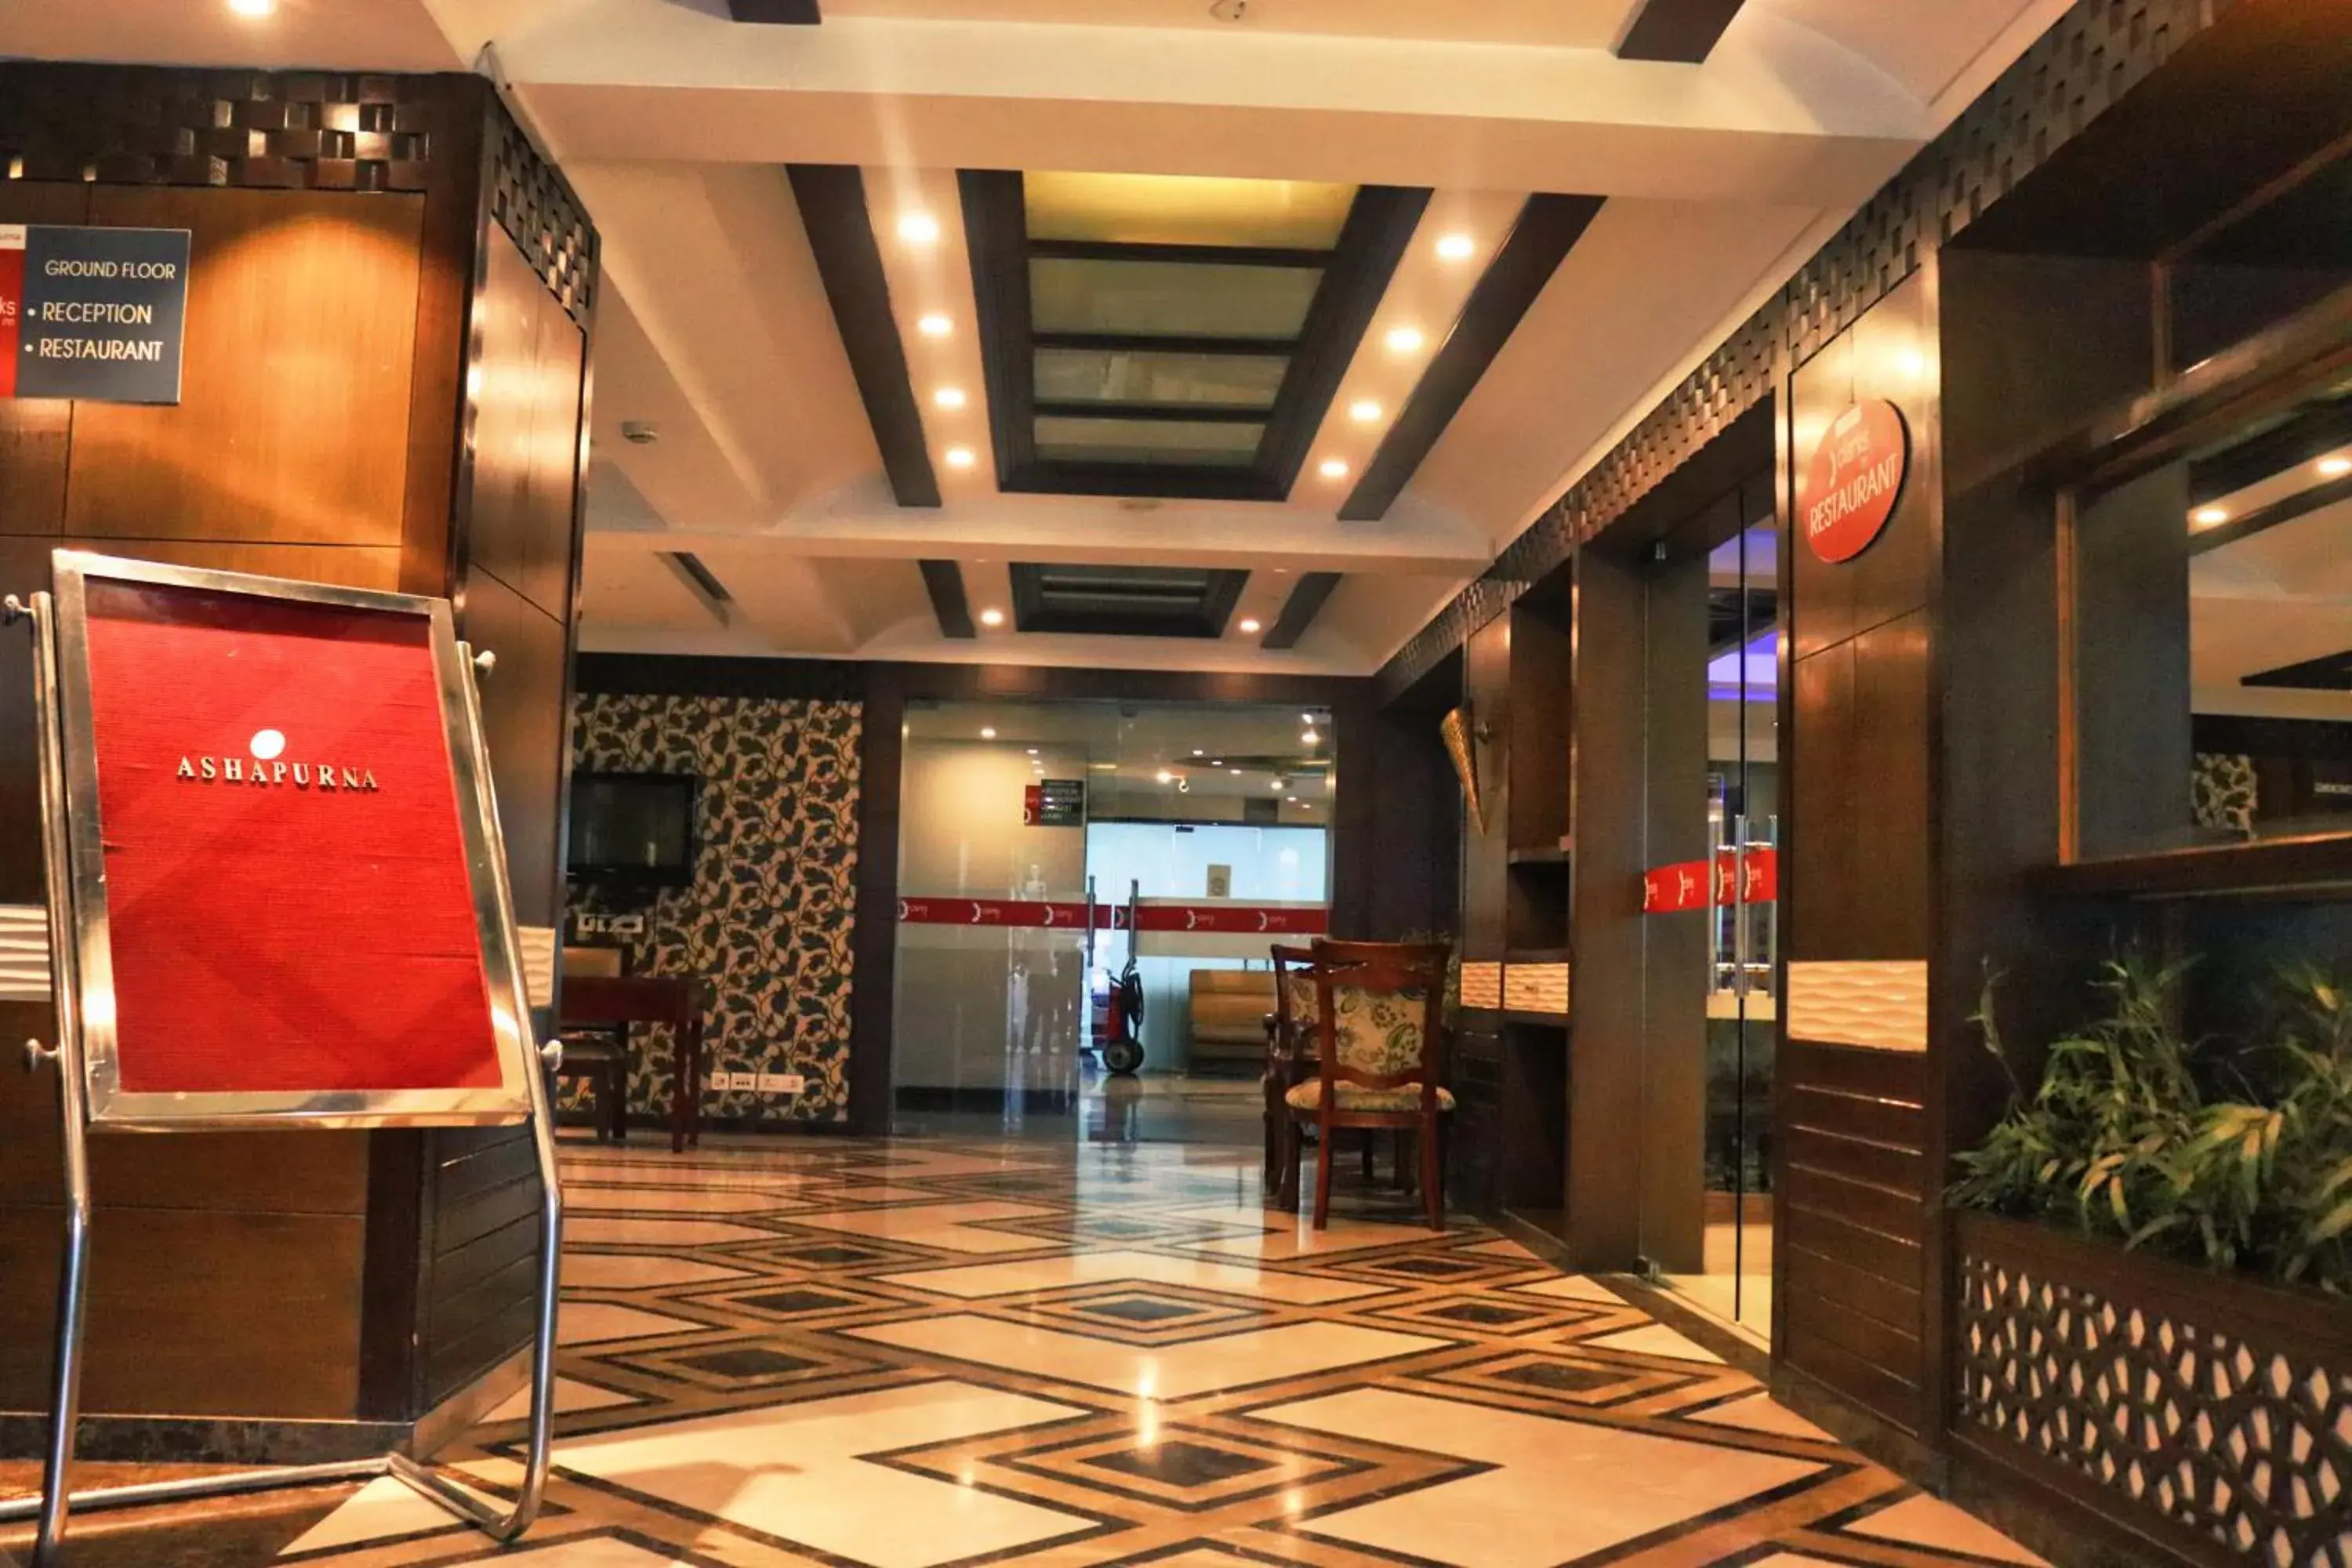 Lobby or reception, Lobby/Reception in Hotel Clarks Inn Jaipur, Banipark